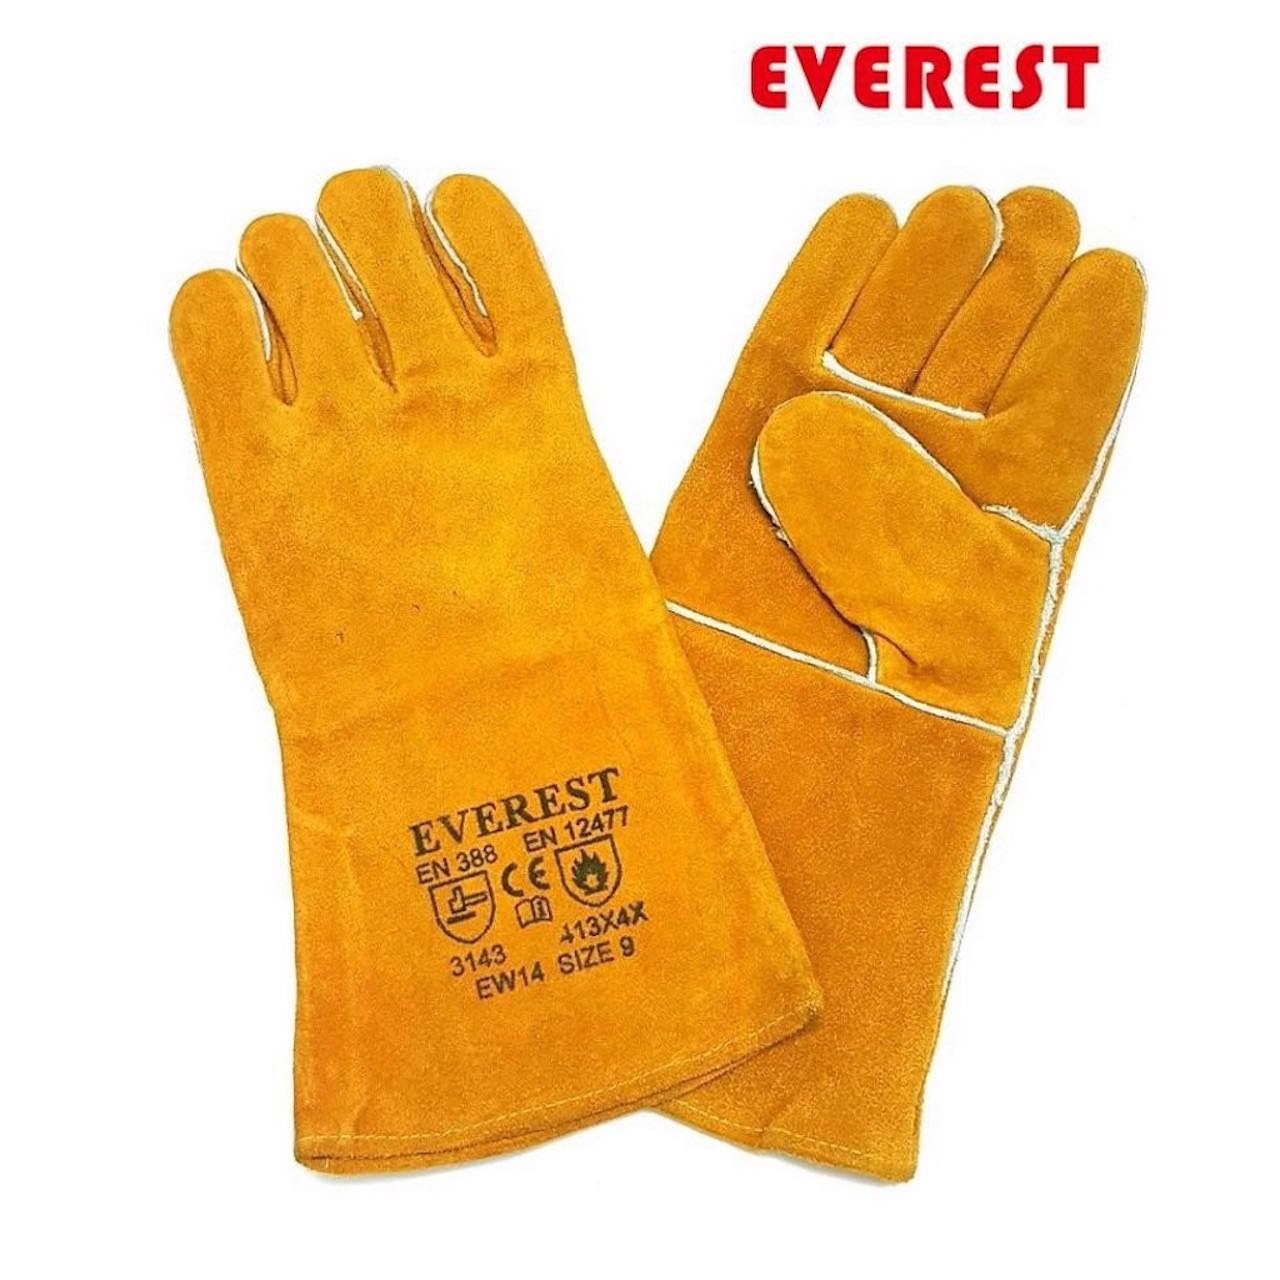 Găng tay da hàn Everest EW14 bao tay chống cháy, chịu nhiệt/ tia lửa văng bắn chuyên dùng hàn que (vàng) - Labor Leather Glove EW14